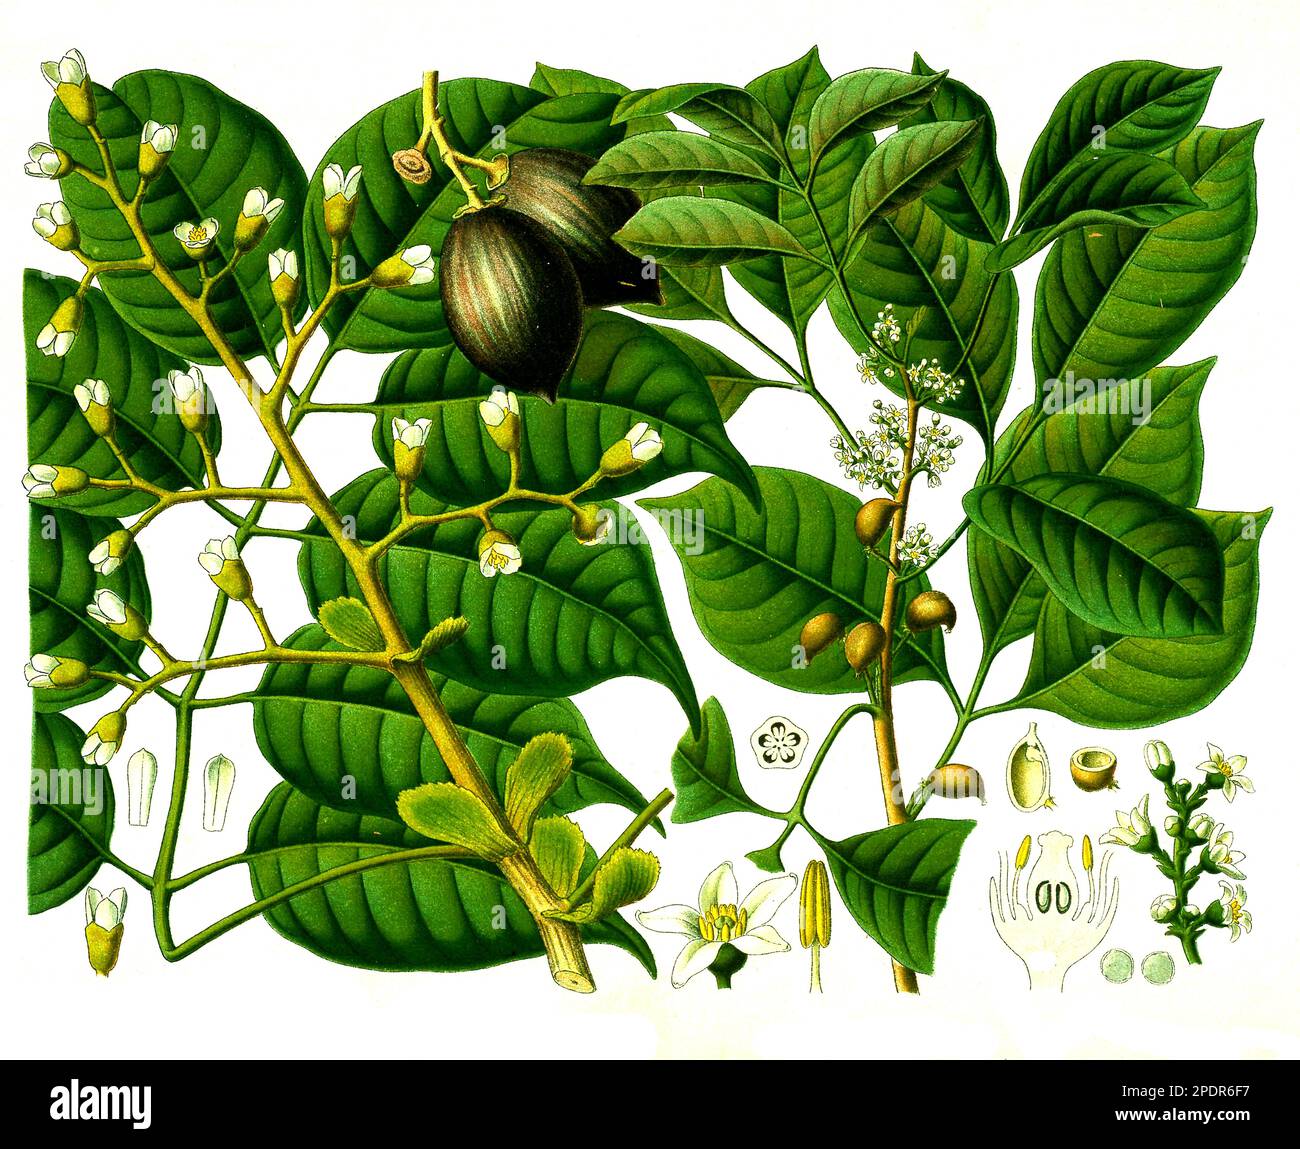 Heilpflanze, Canarium luzonicum, auch Manilaelemi oder Manilaelemibaum, eine Baumart aus der Familie der Balsambaumgewächse und Icica Icicariba, Historisch, digital restaurierte Reproduktion von einer Vorlage aus dem 19. Jahrhundert, Stock Photo